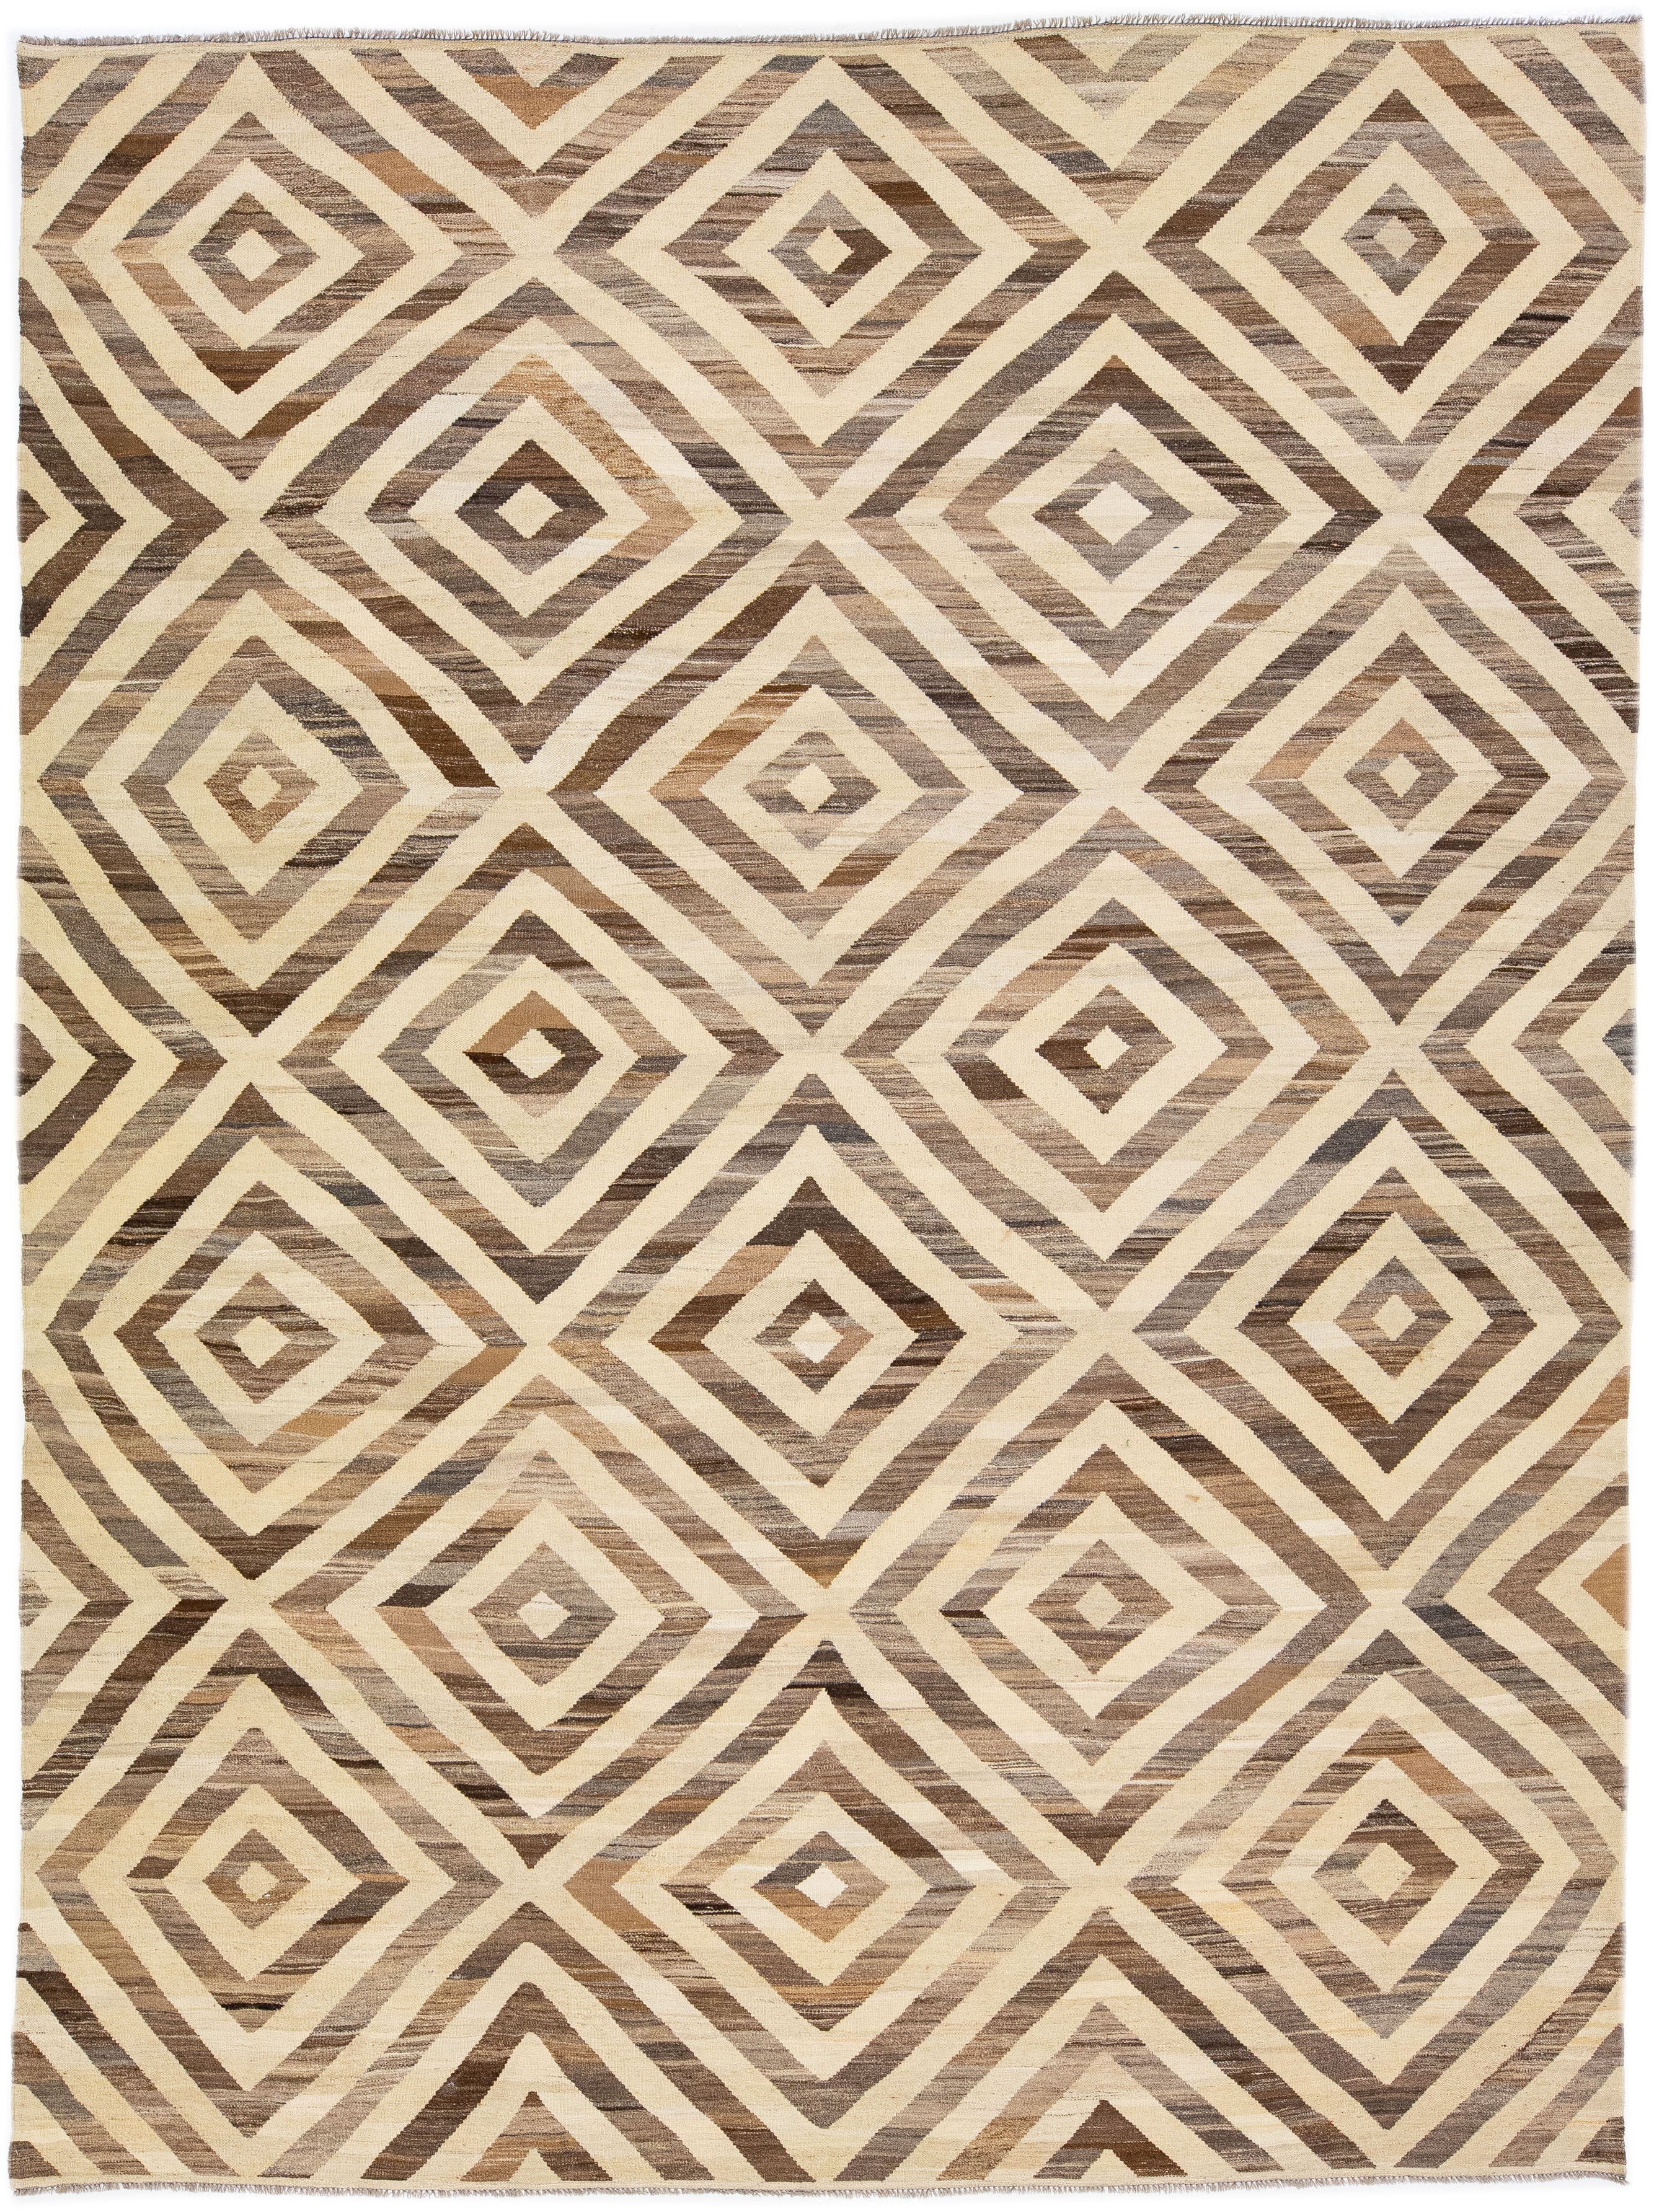 Moderner geometrischer handgefertigter Kelim-Teppich aus Wolle in Beige und Braun